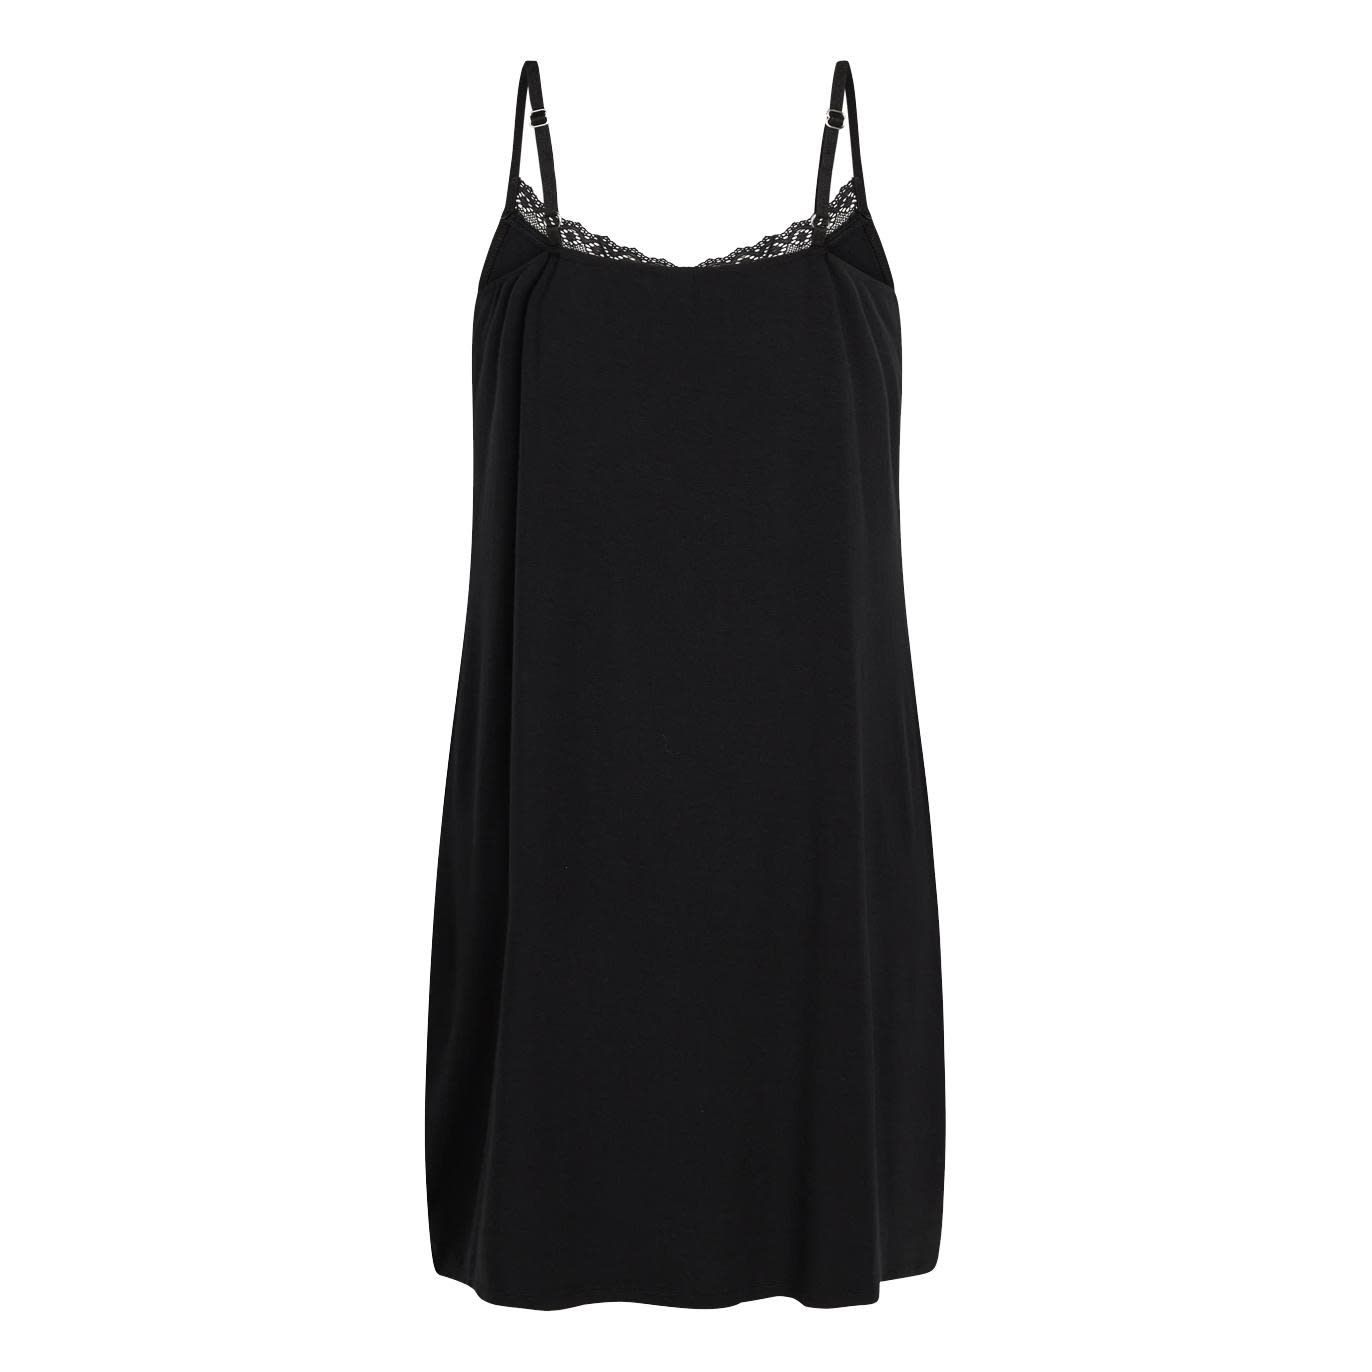 Maia Bamboo Chemise Dress, black